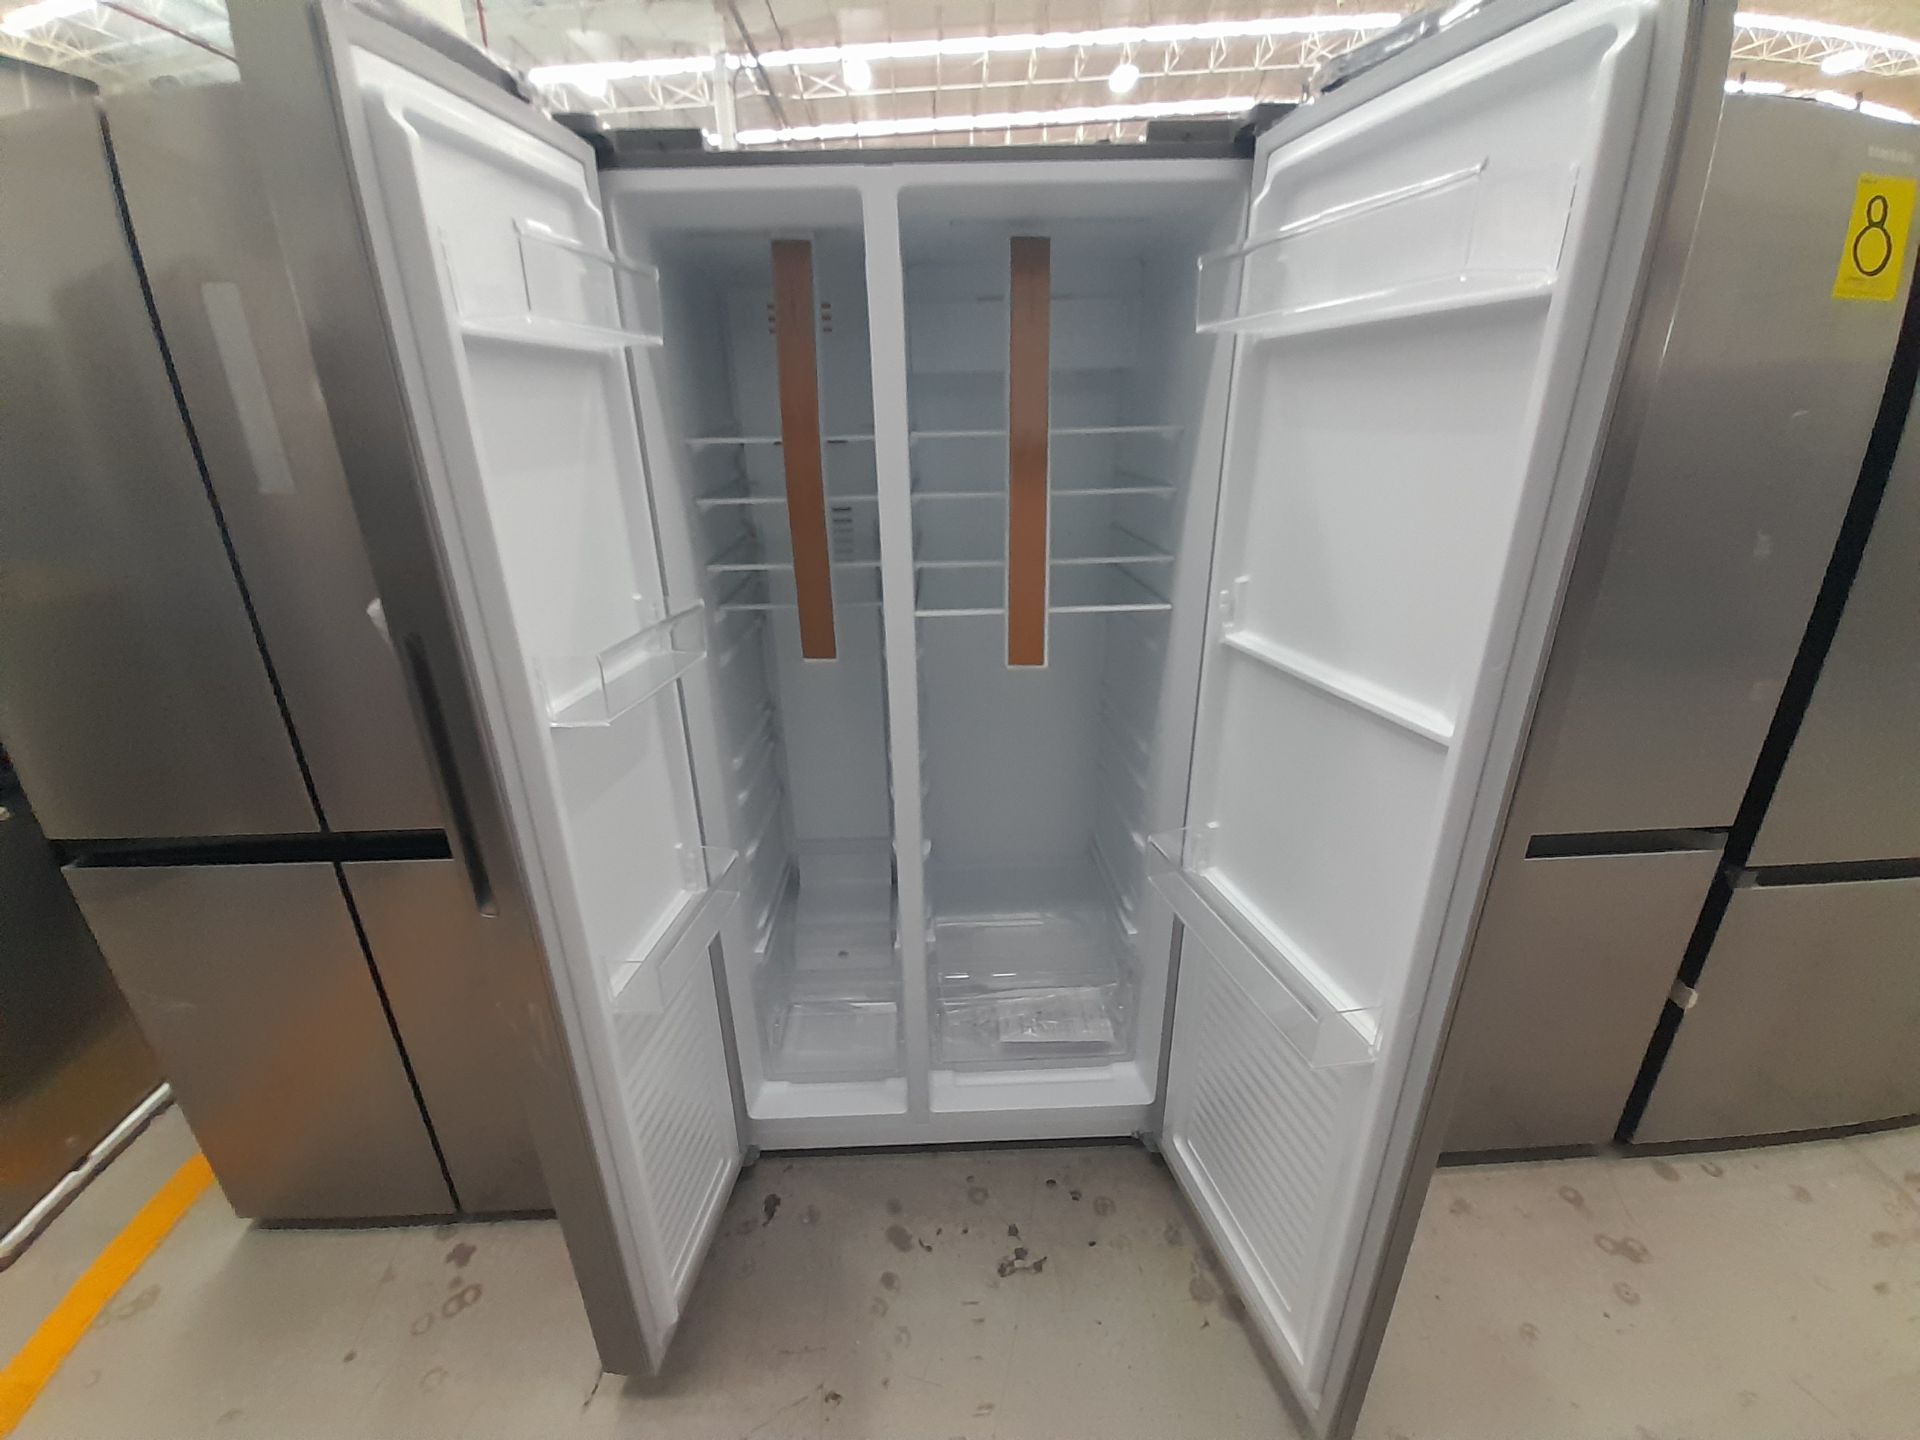 Lote de 1 Refrigerador Marca OSTER, Modelo OSSBSME20SSEVI, Color GRIS (No se asegura su funcion - Image 4 of 5